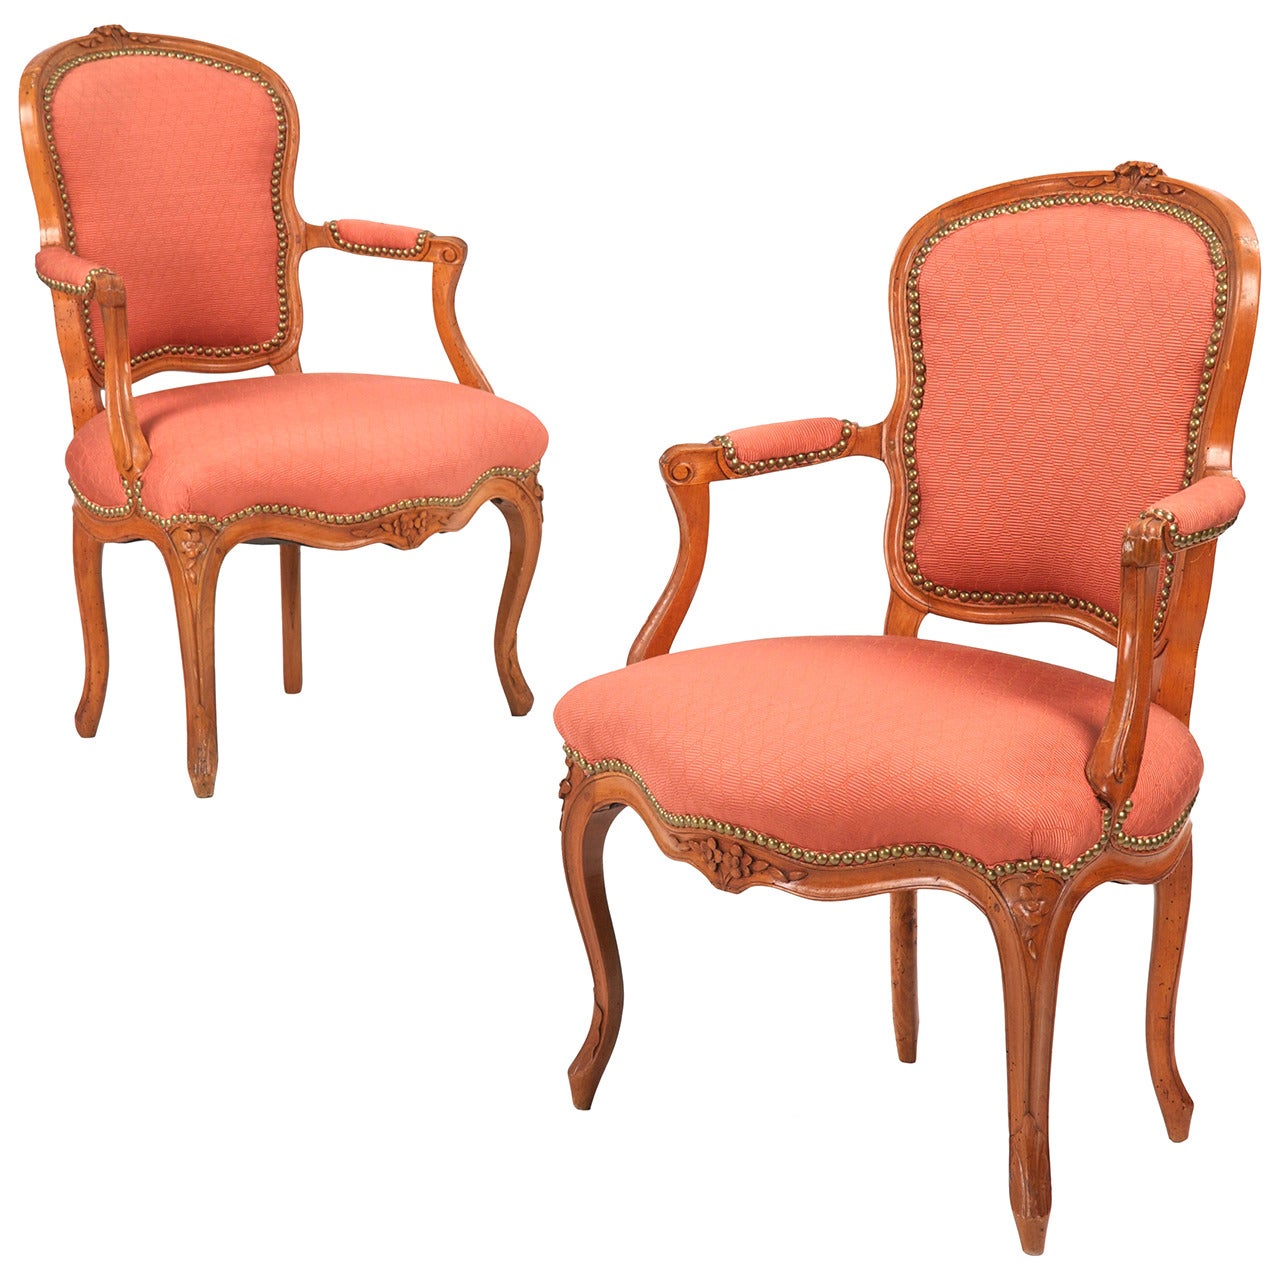 Pair of French Louis XV Antique Fauteuils Arm Chairs, Jean-Baptiste Sené c. 1760